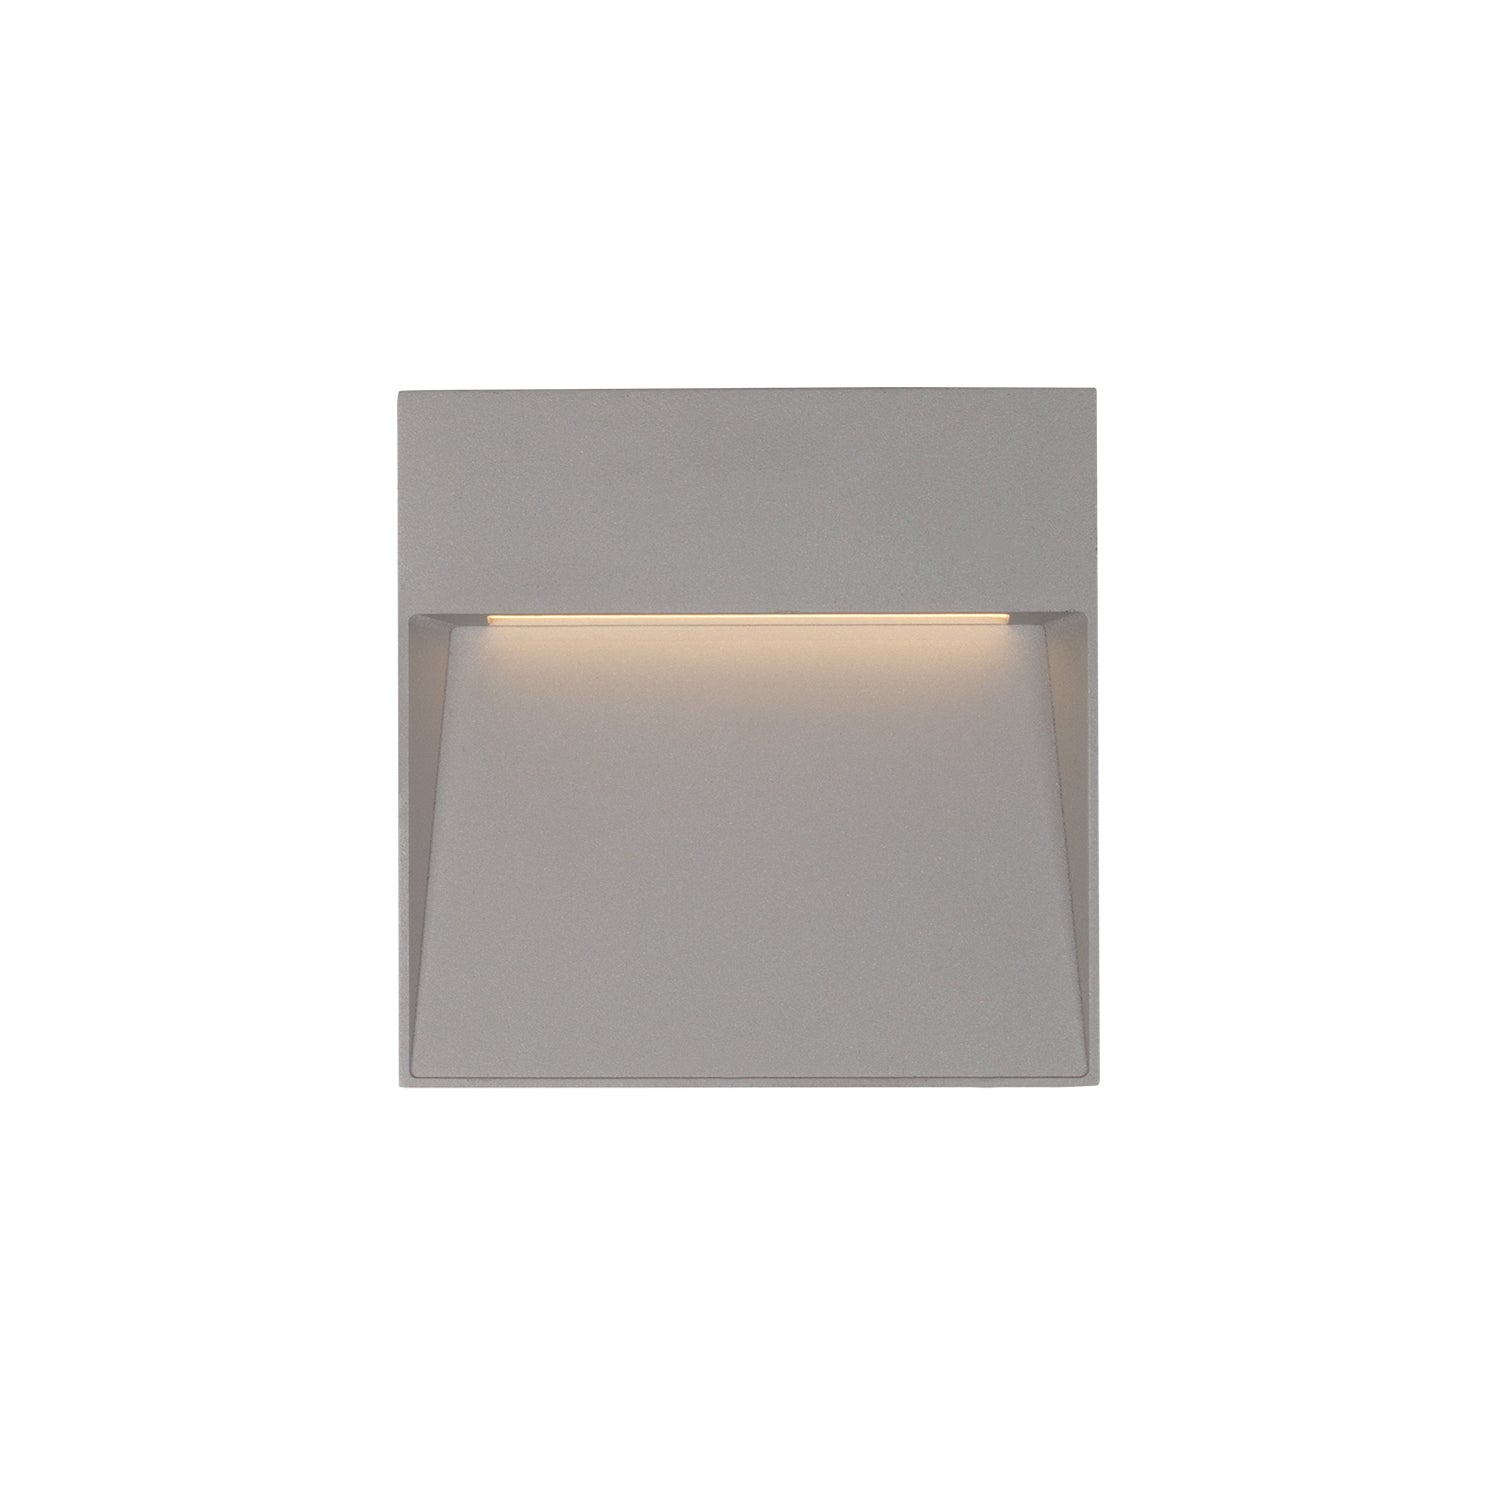 Kuzco Lighting - EW71305-GY - LED Wall Sconce - Casa - Gray